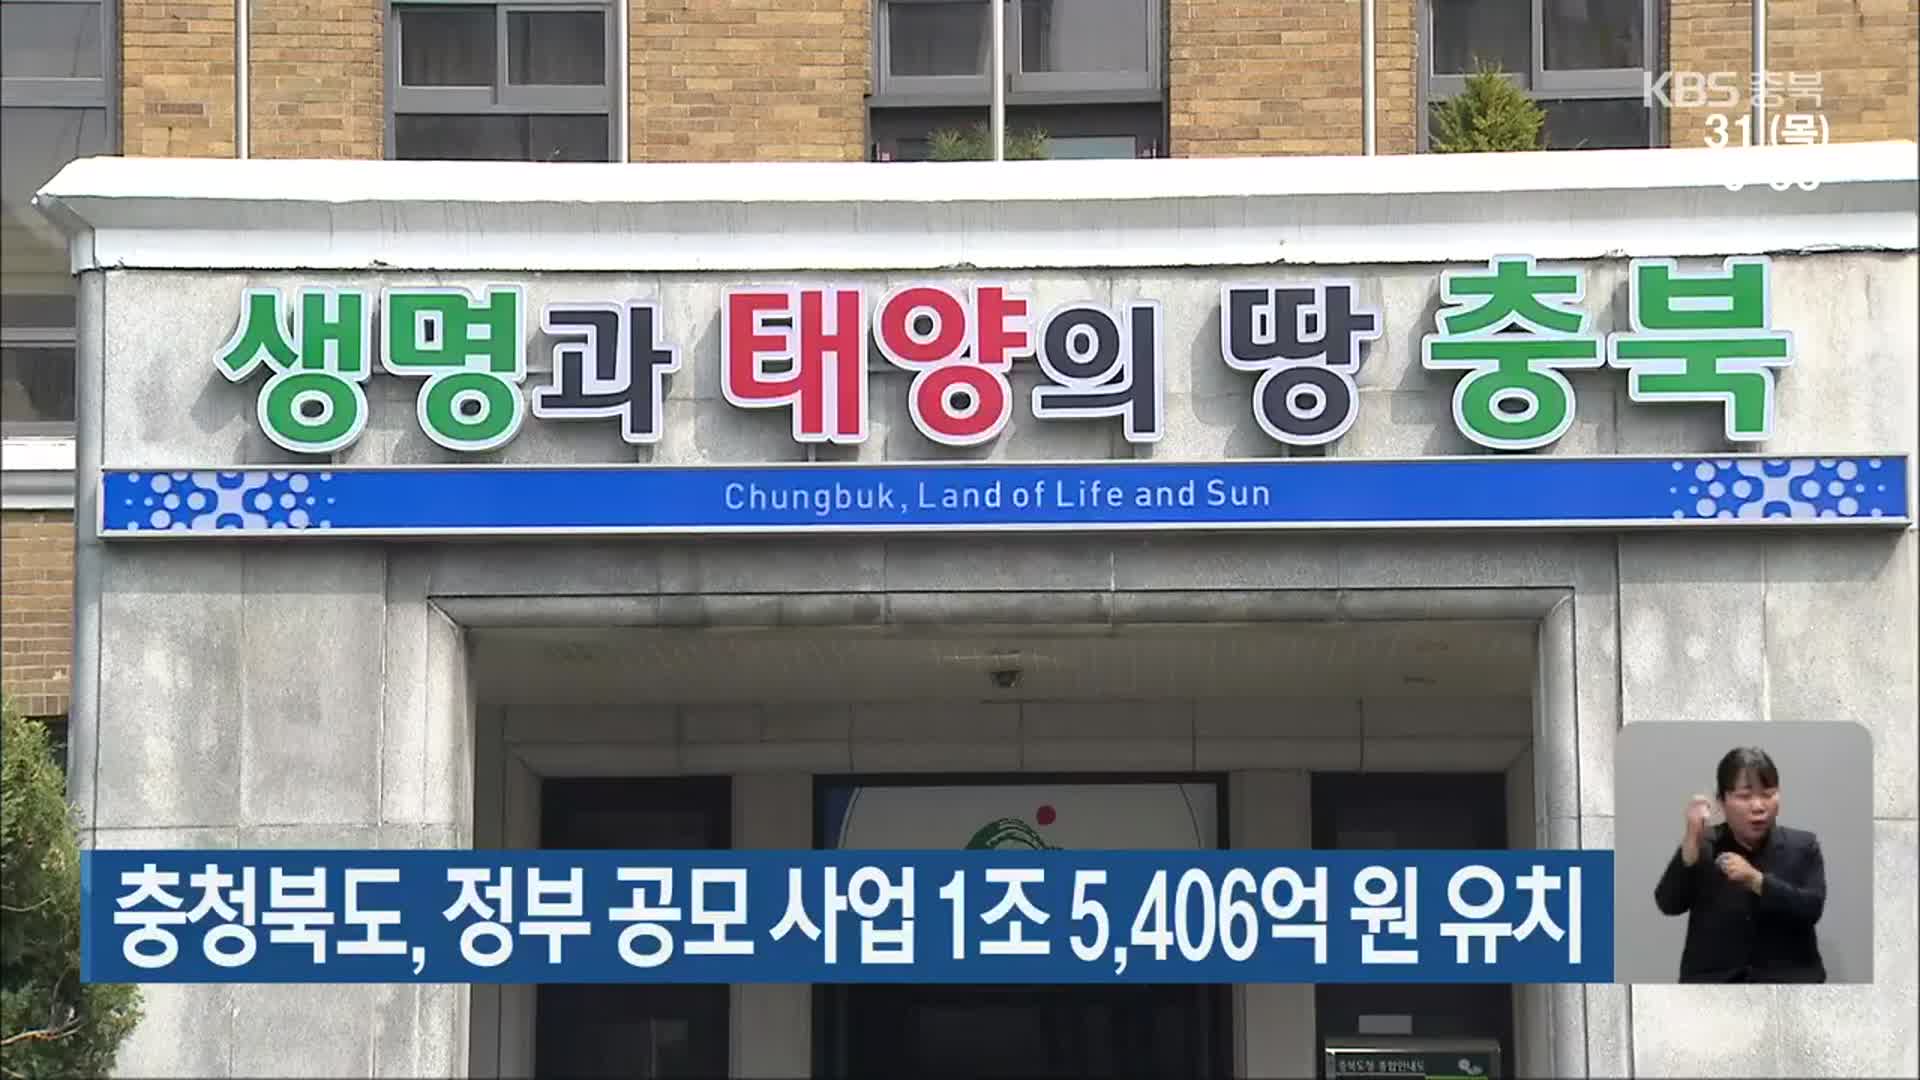 충청북도, 정부 공모 사업 1조 5,406억 원 유치